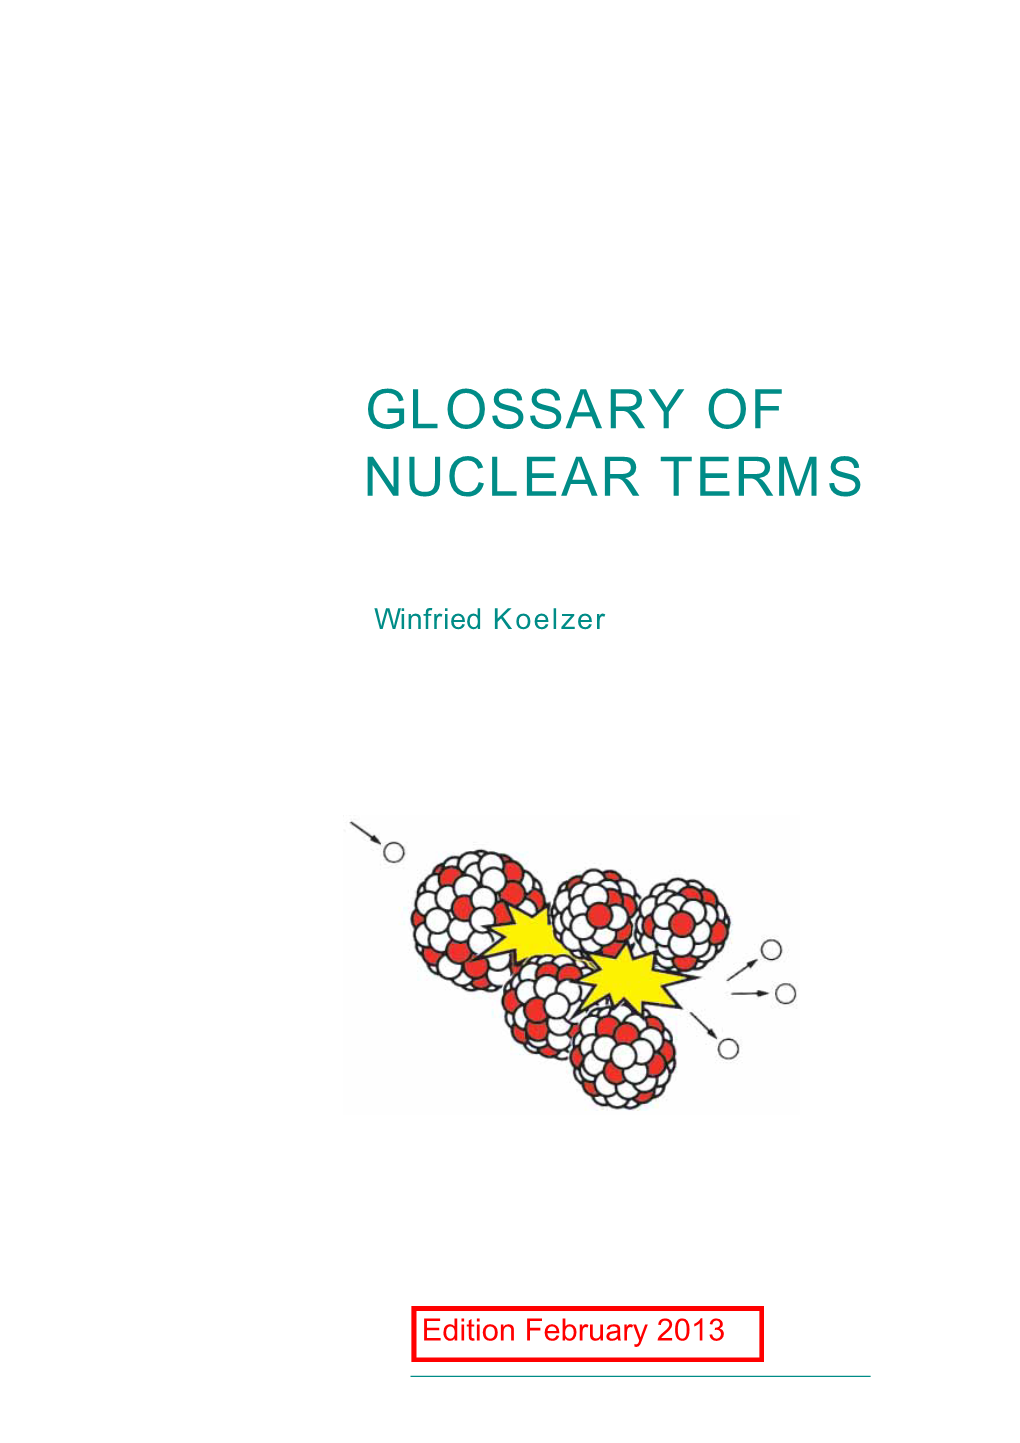 Nuclear Glossary 2013-02-13